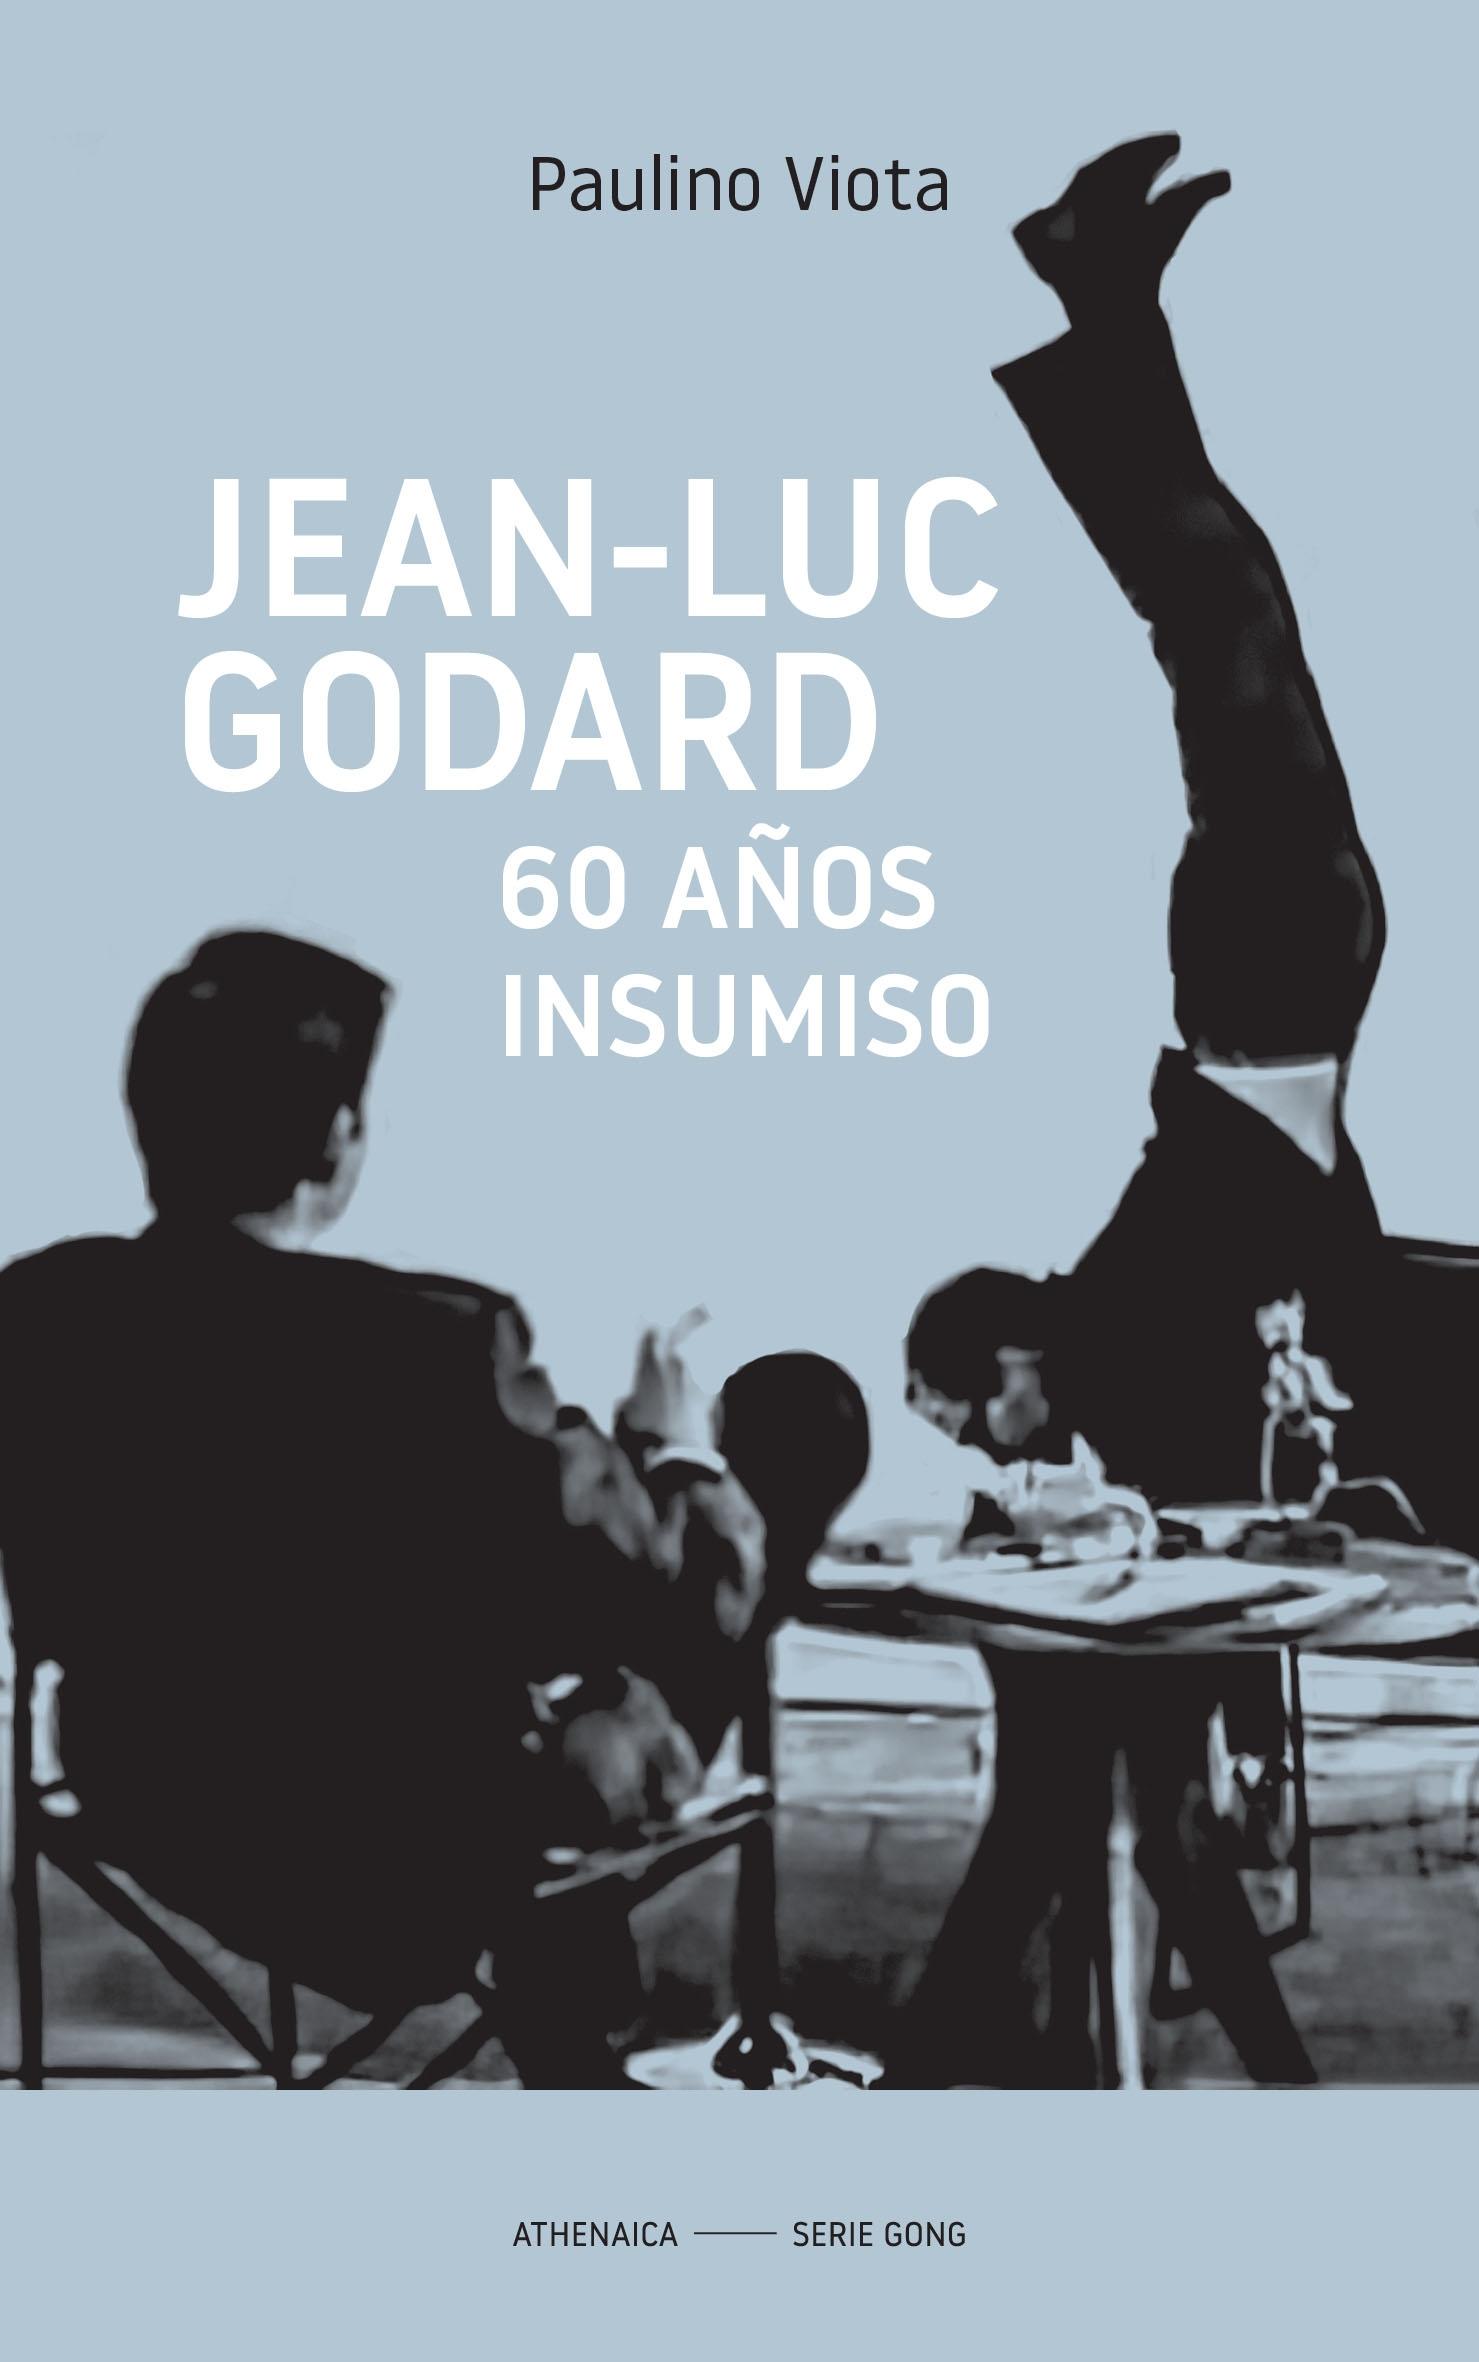 Jean-Luc Godard "60 Años Insumiso"